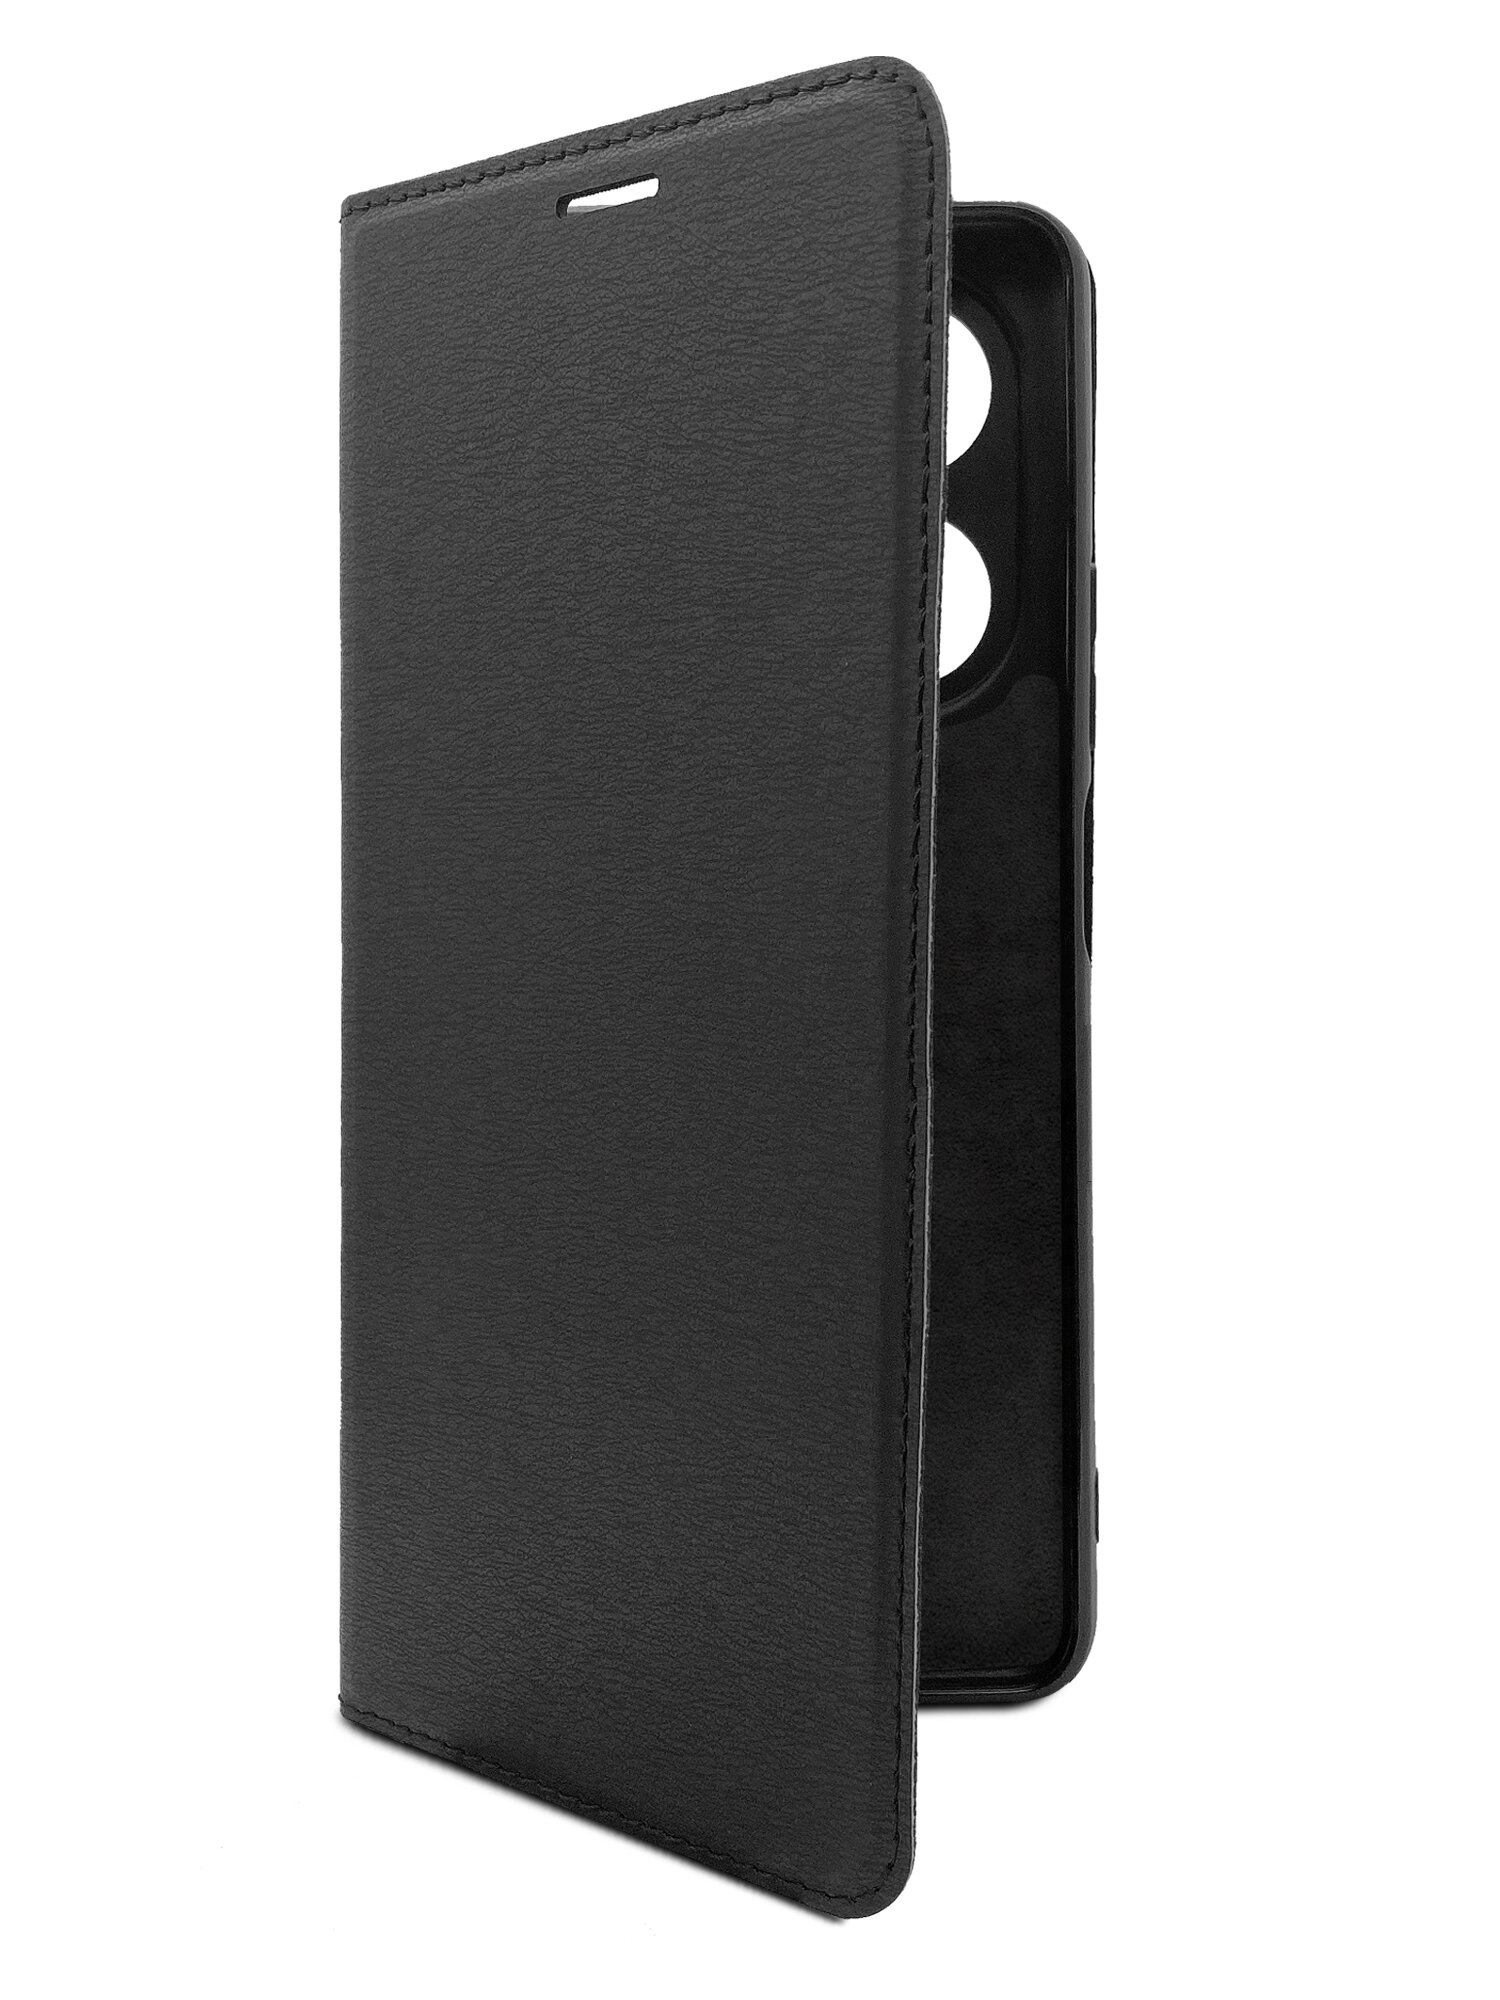 Чехол на Infinix HOT 40 (Инфиникс Хот 40) черный книжка эко-кожа с функцией подставки отделением для пластиковых карт и магнитами Book case, Brozo